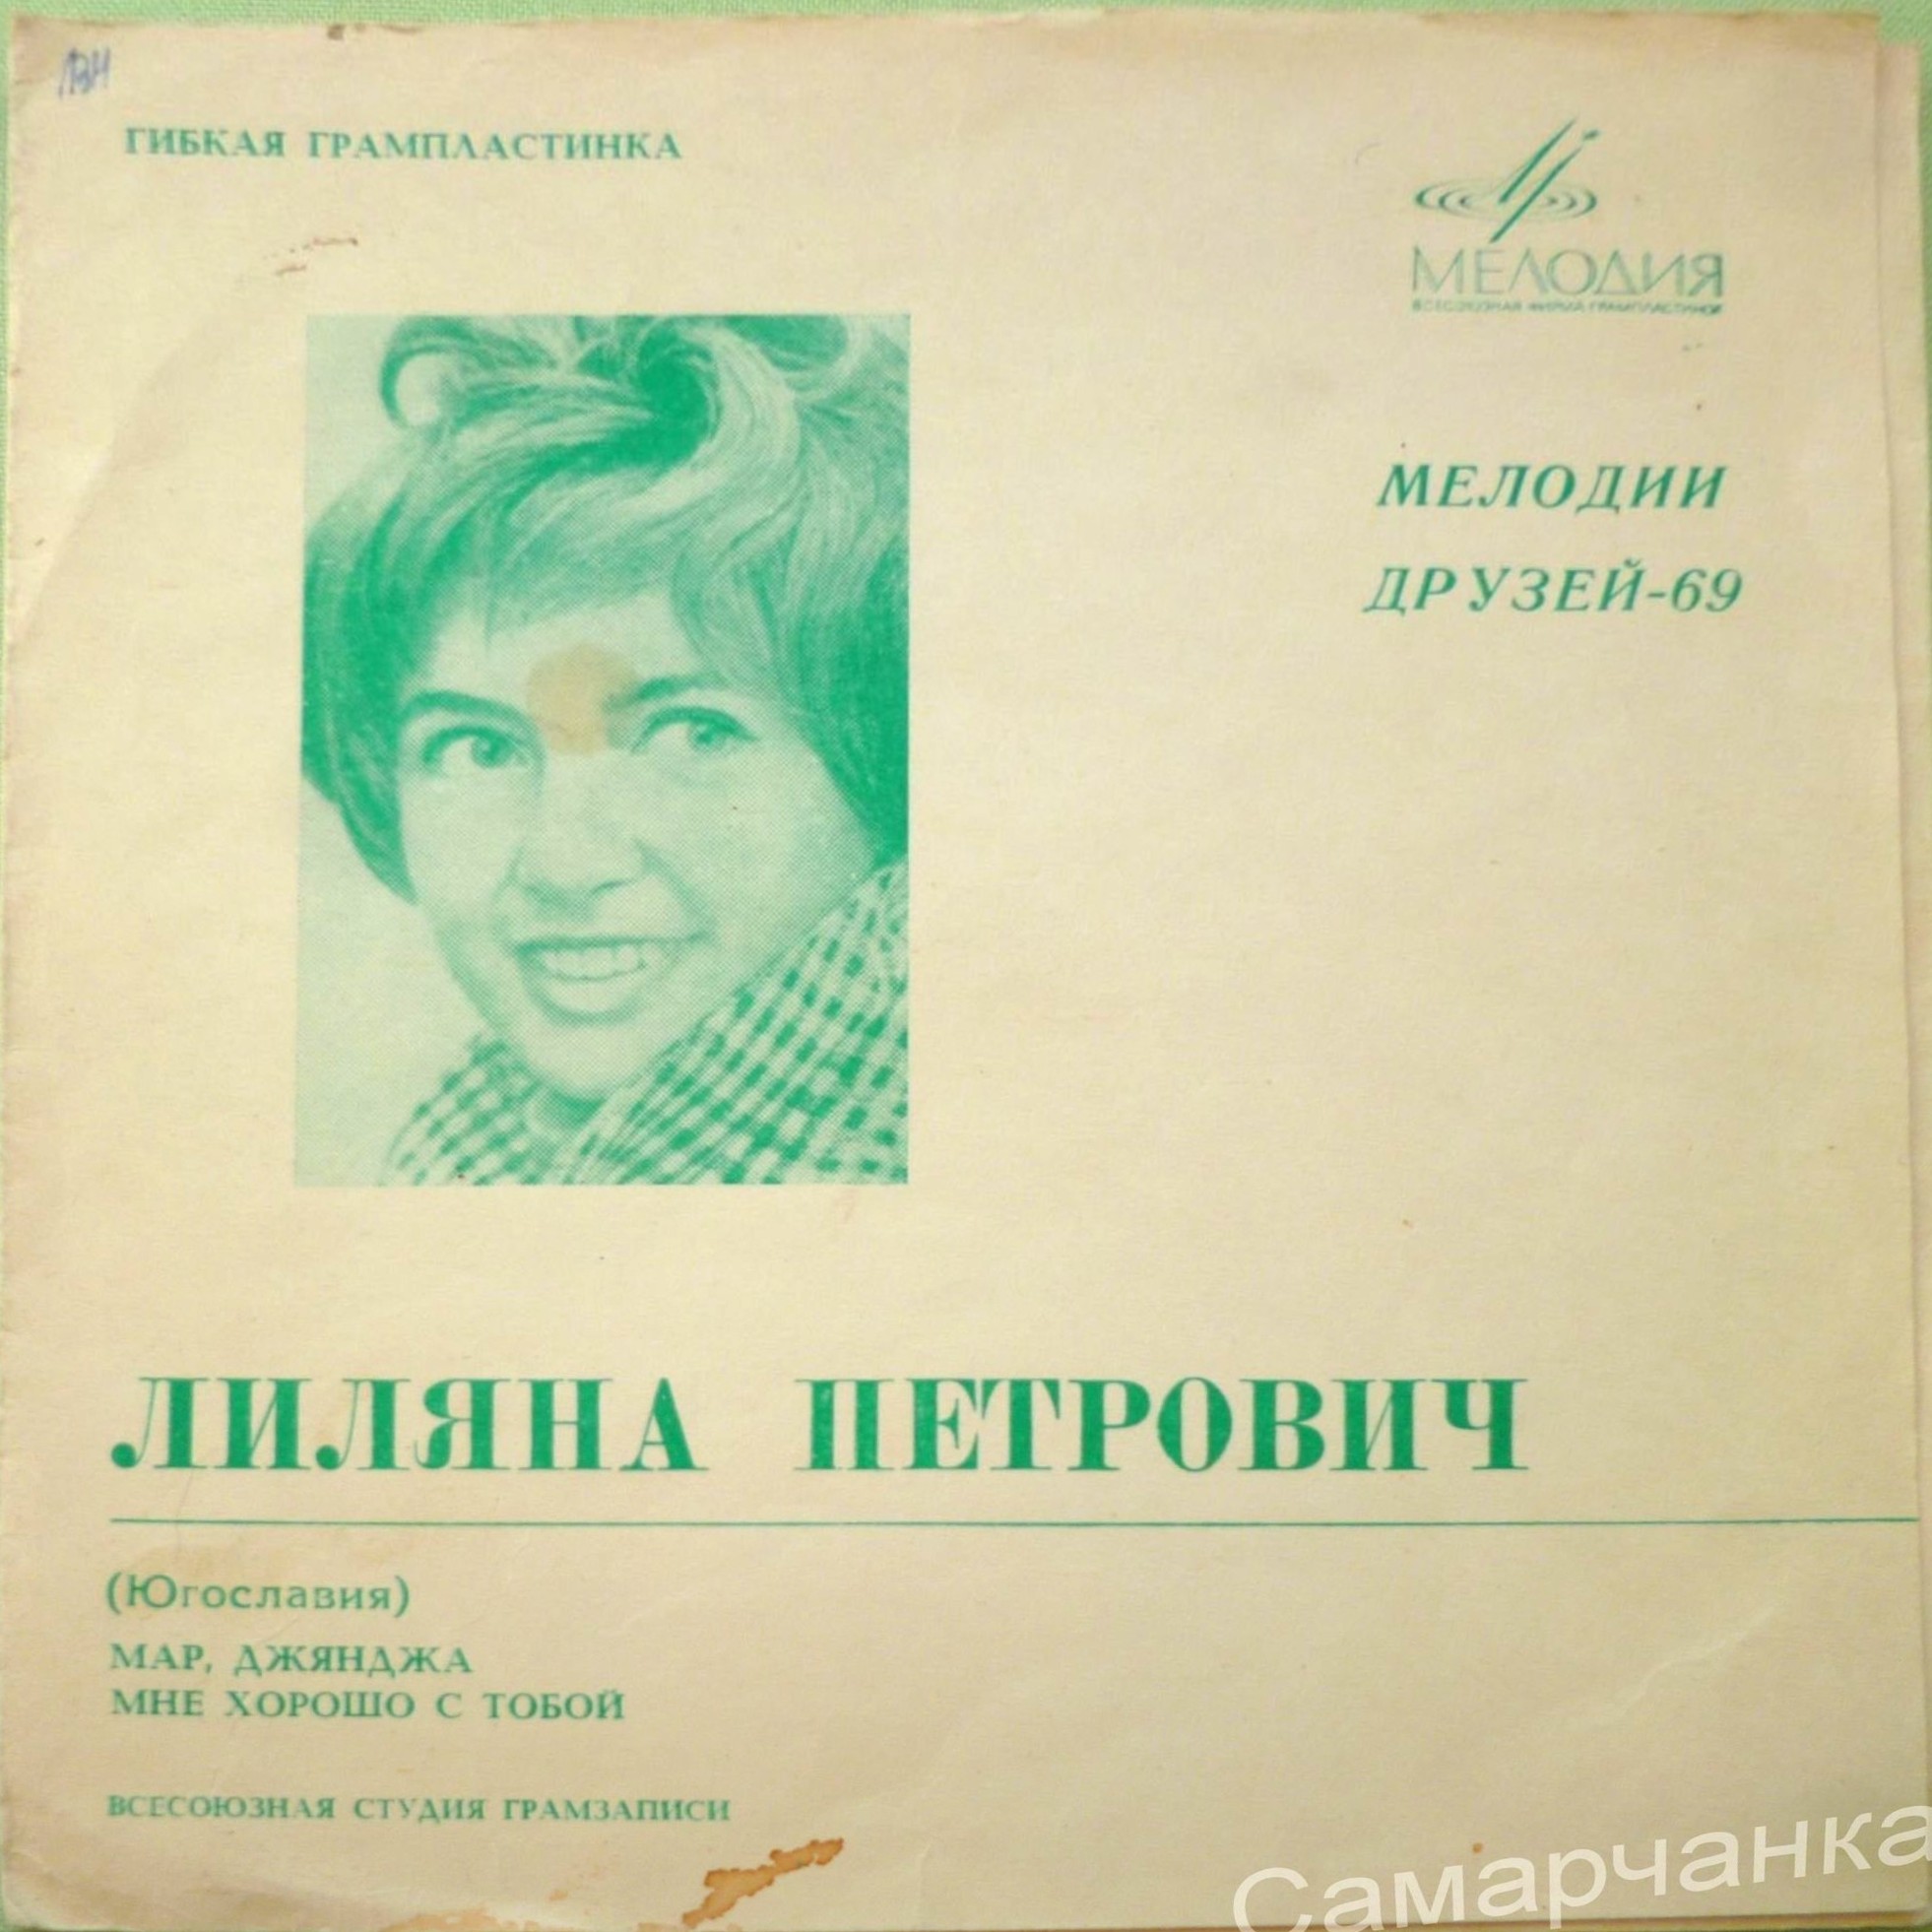 Мелодии друзей-69. Поёт Лиляна Петрович (Югославия)